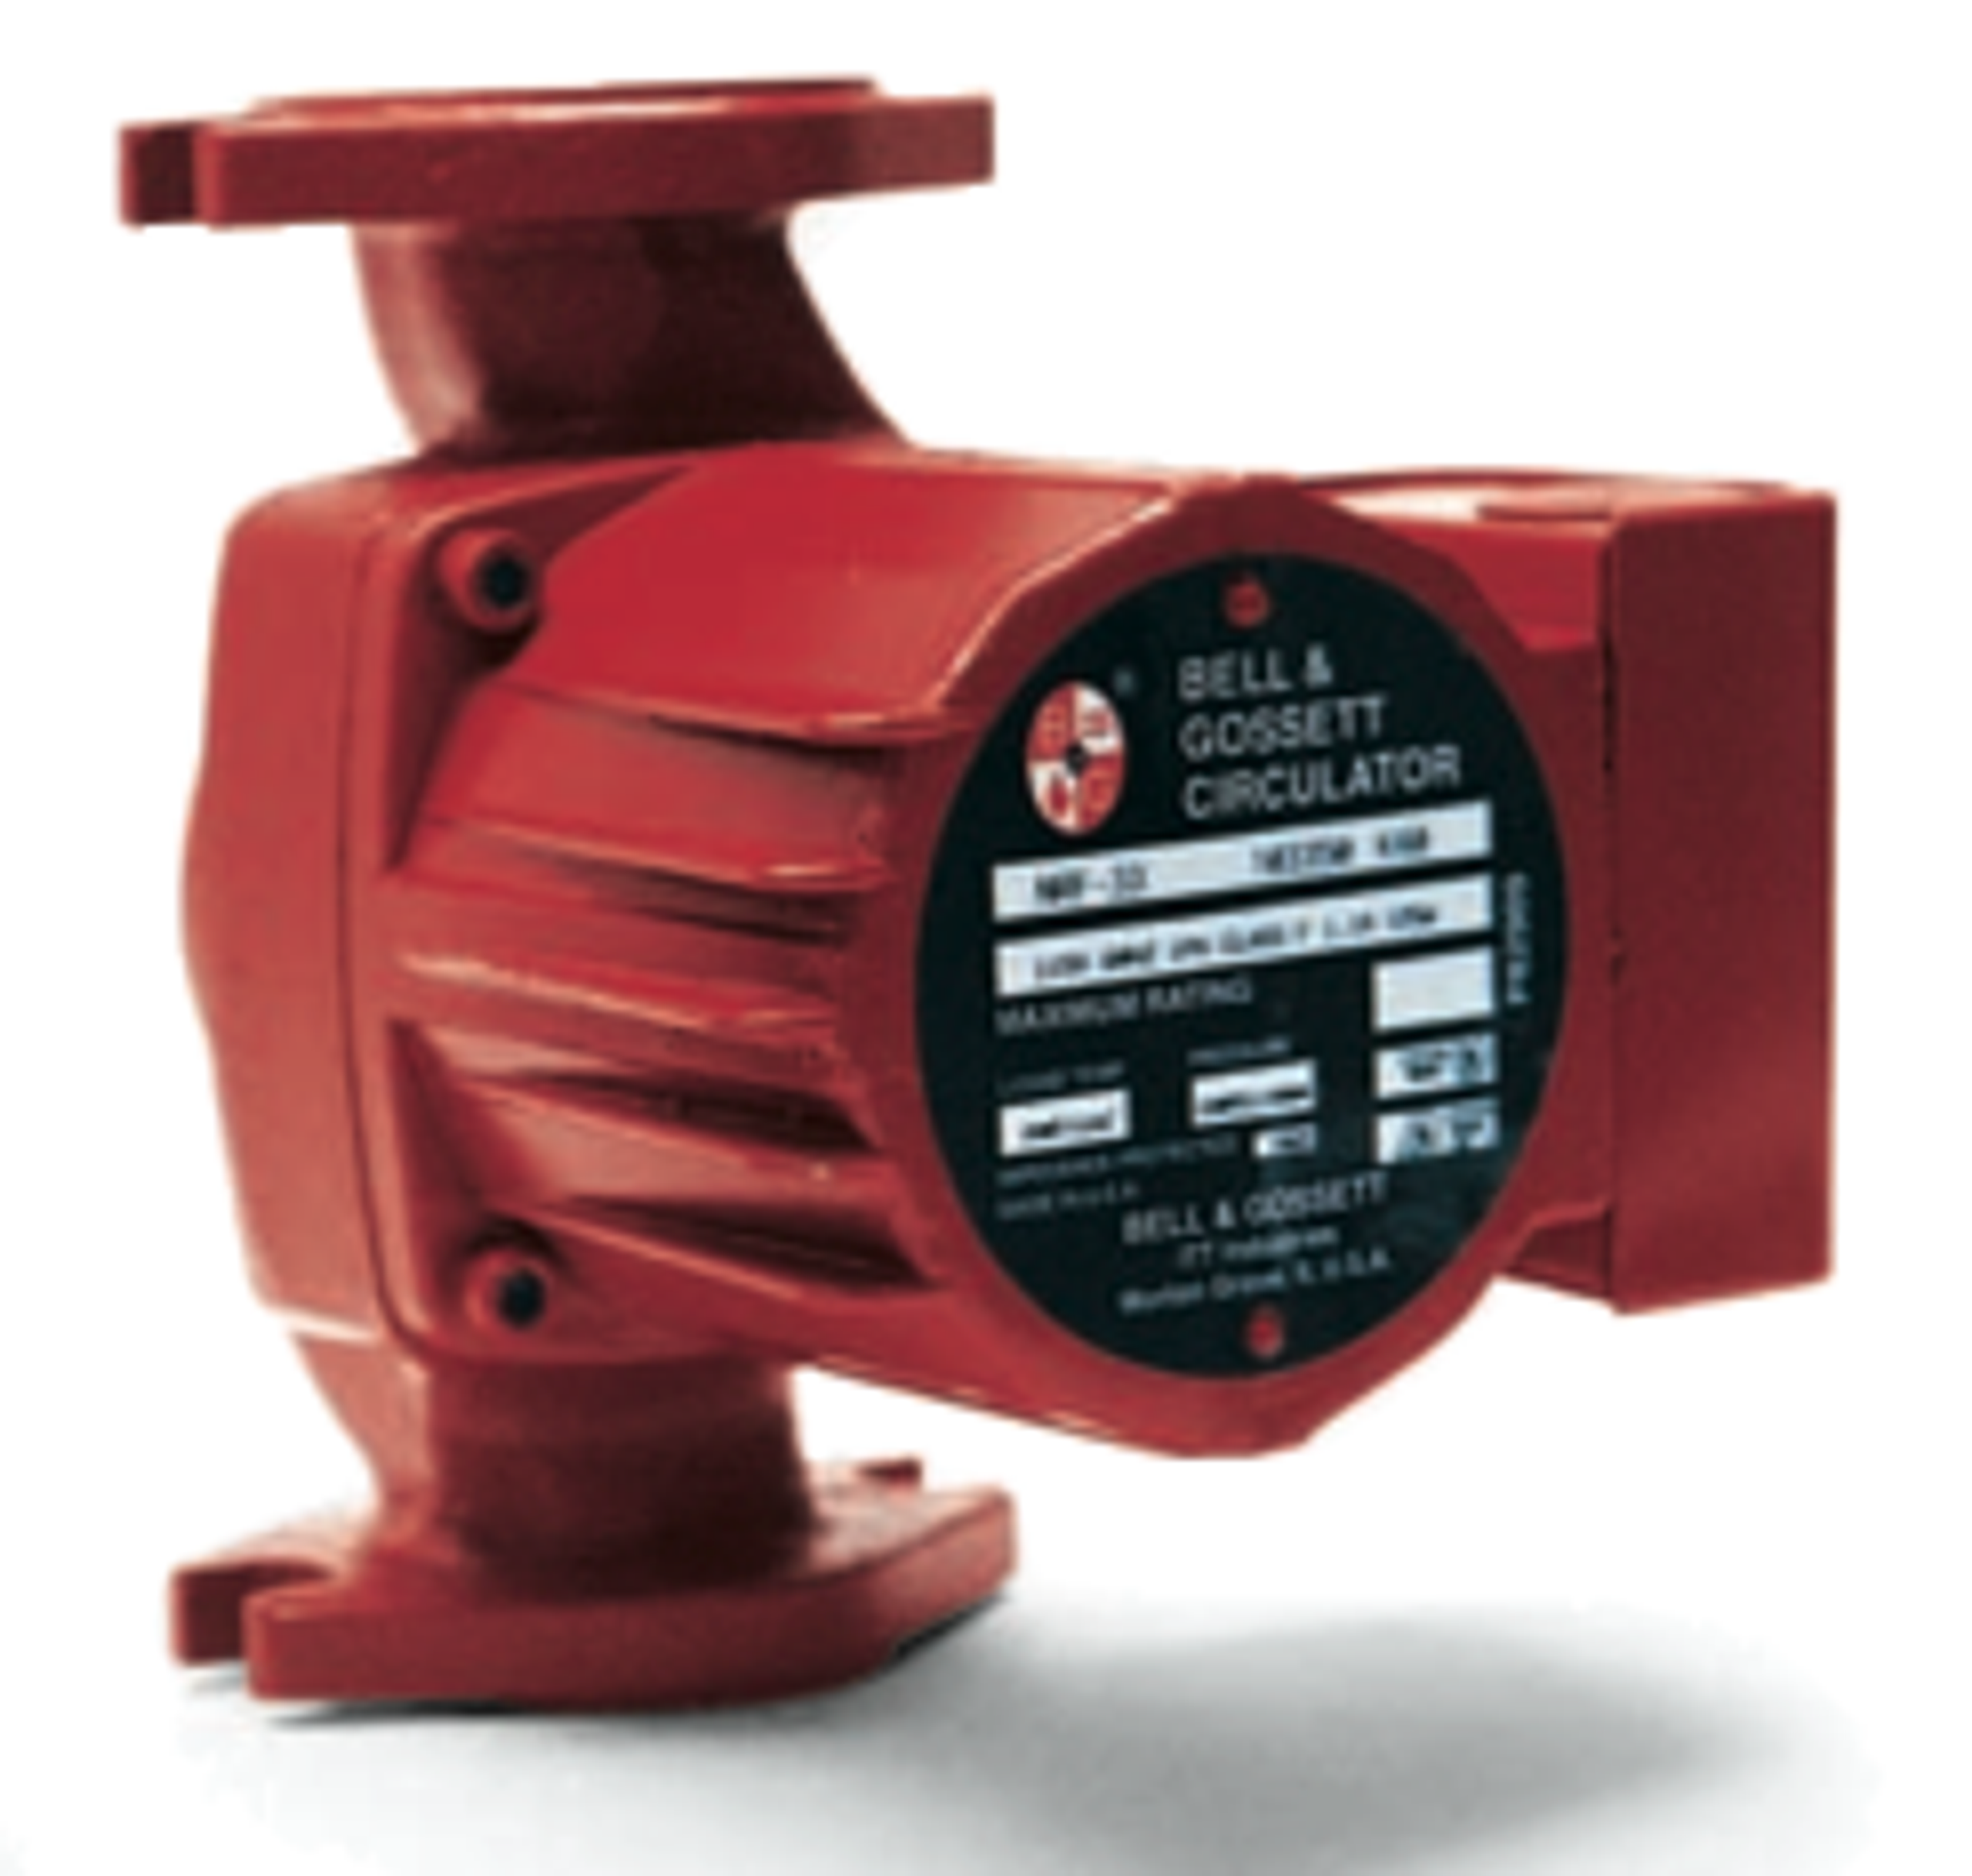 103251 Bell Gossett Nrf 22 Pump National Pump Supply